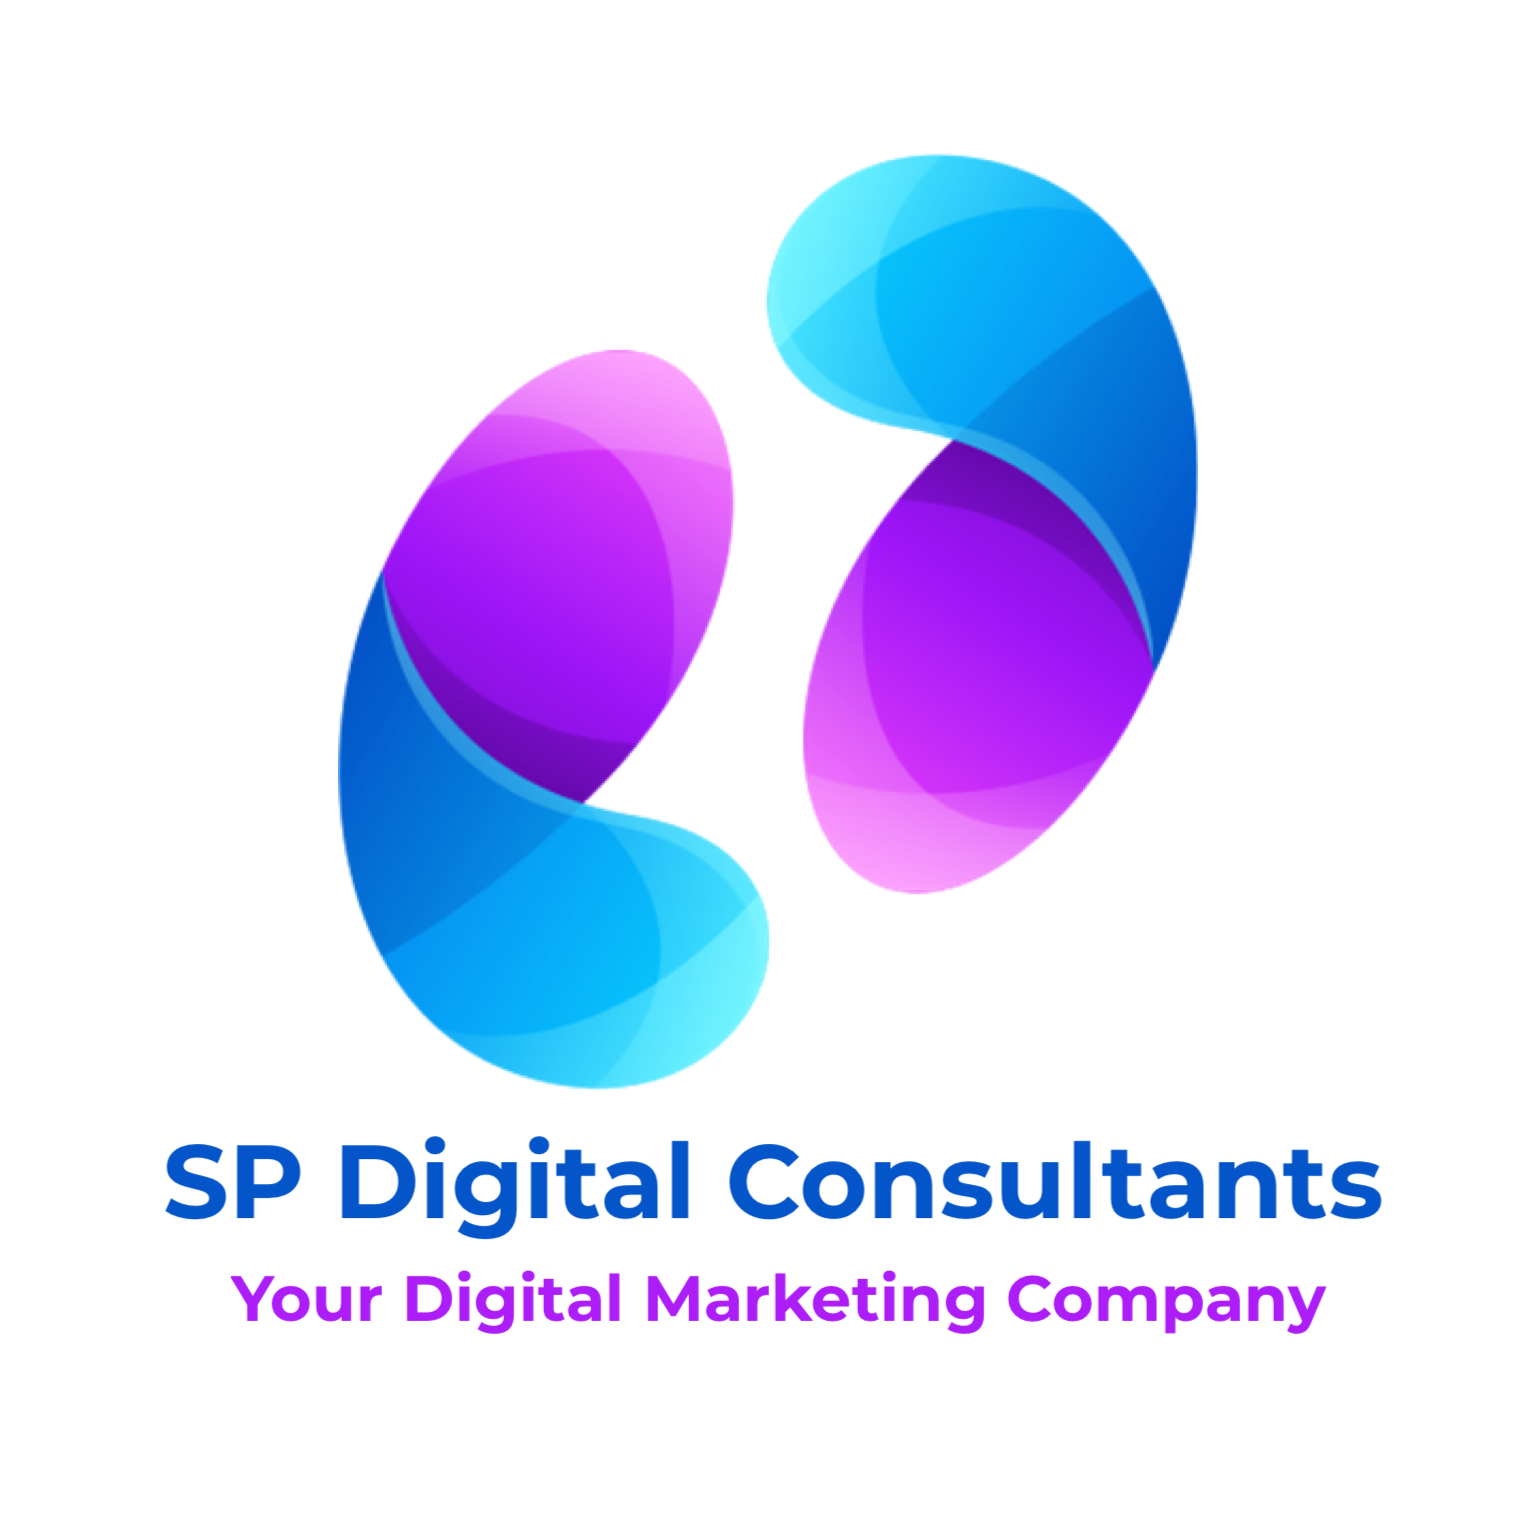 Sp digital consultants